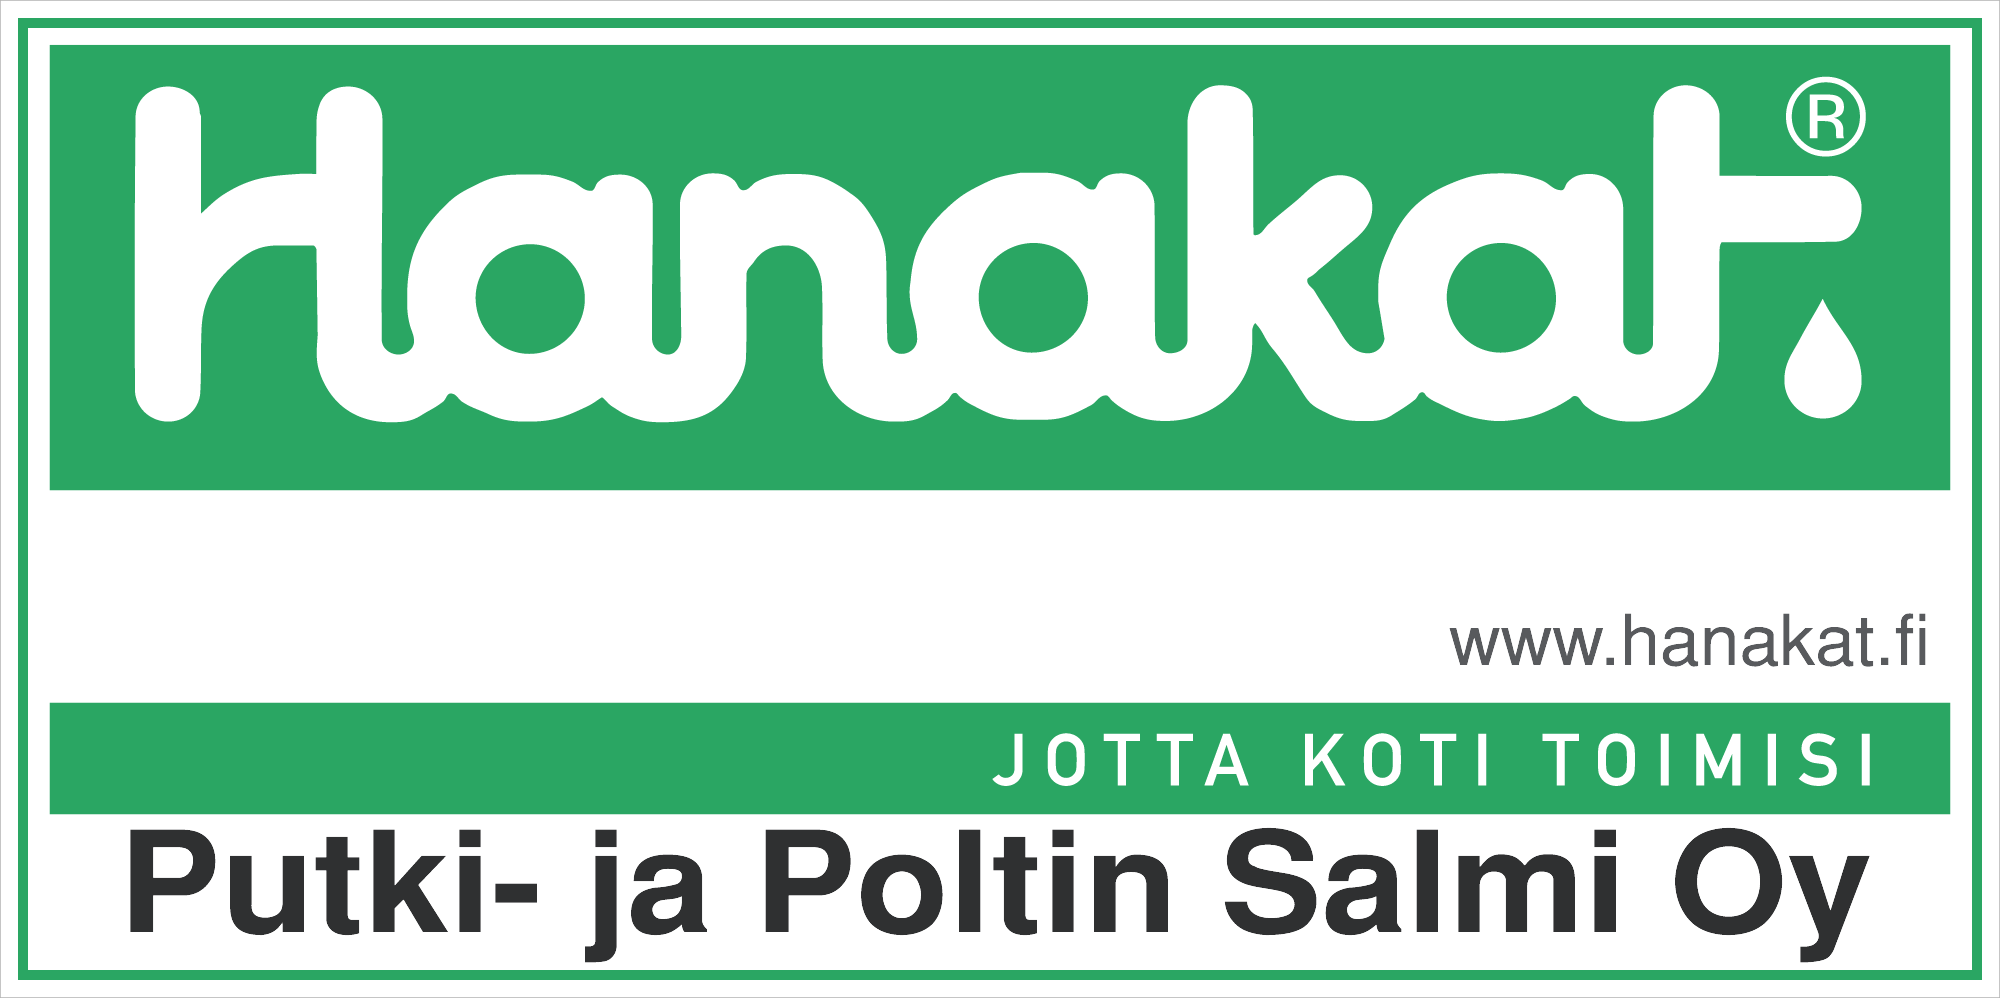 PutkijaPoltin_logo